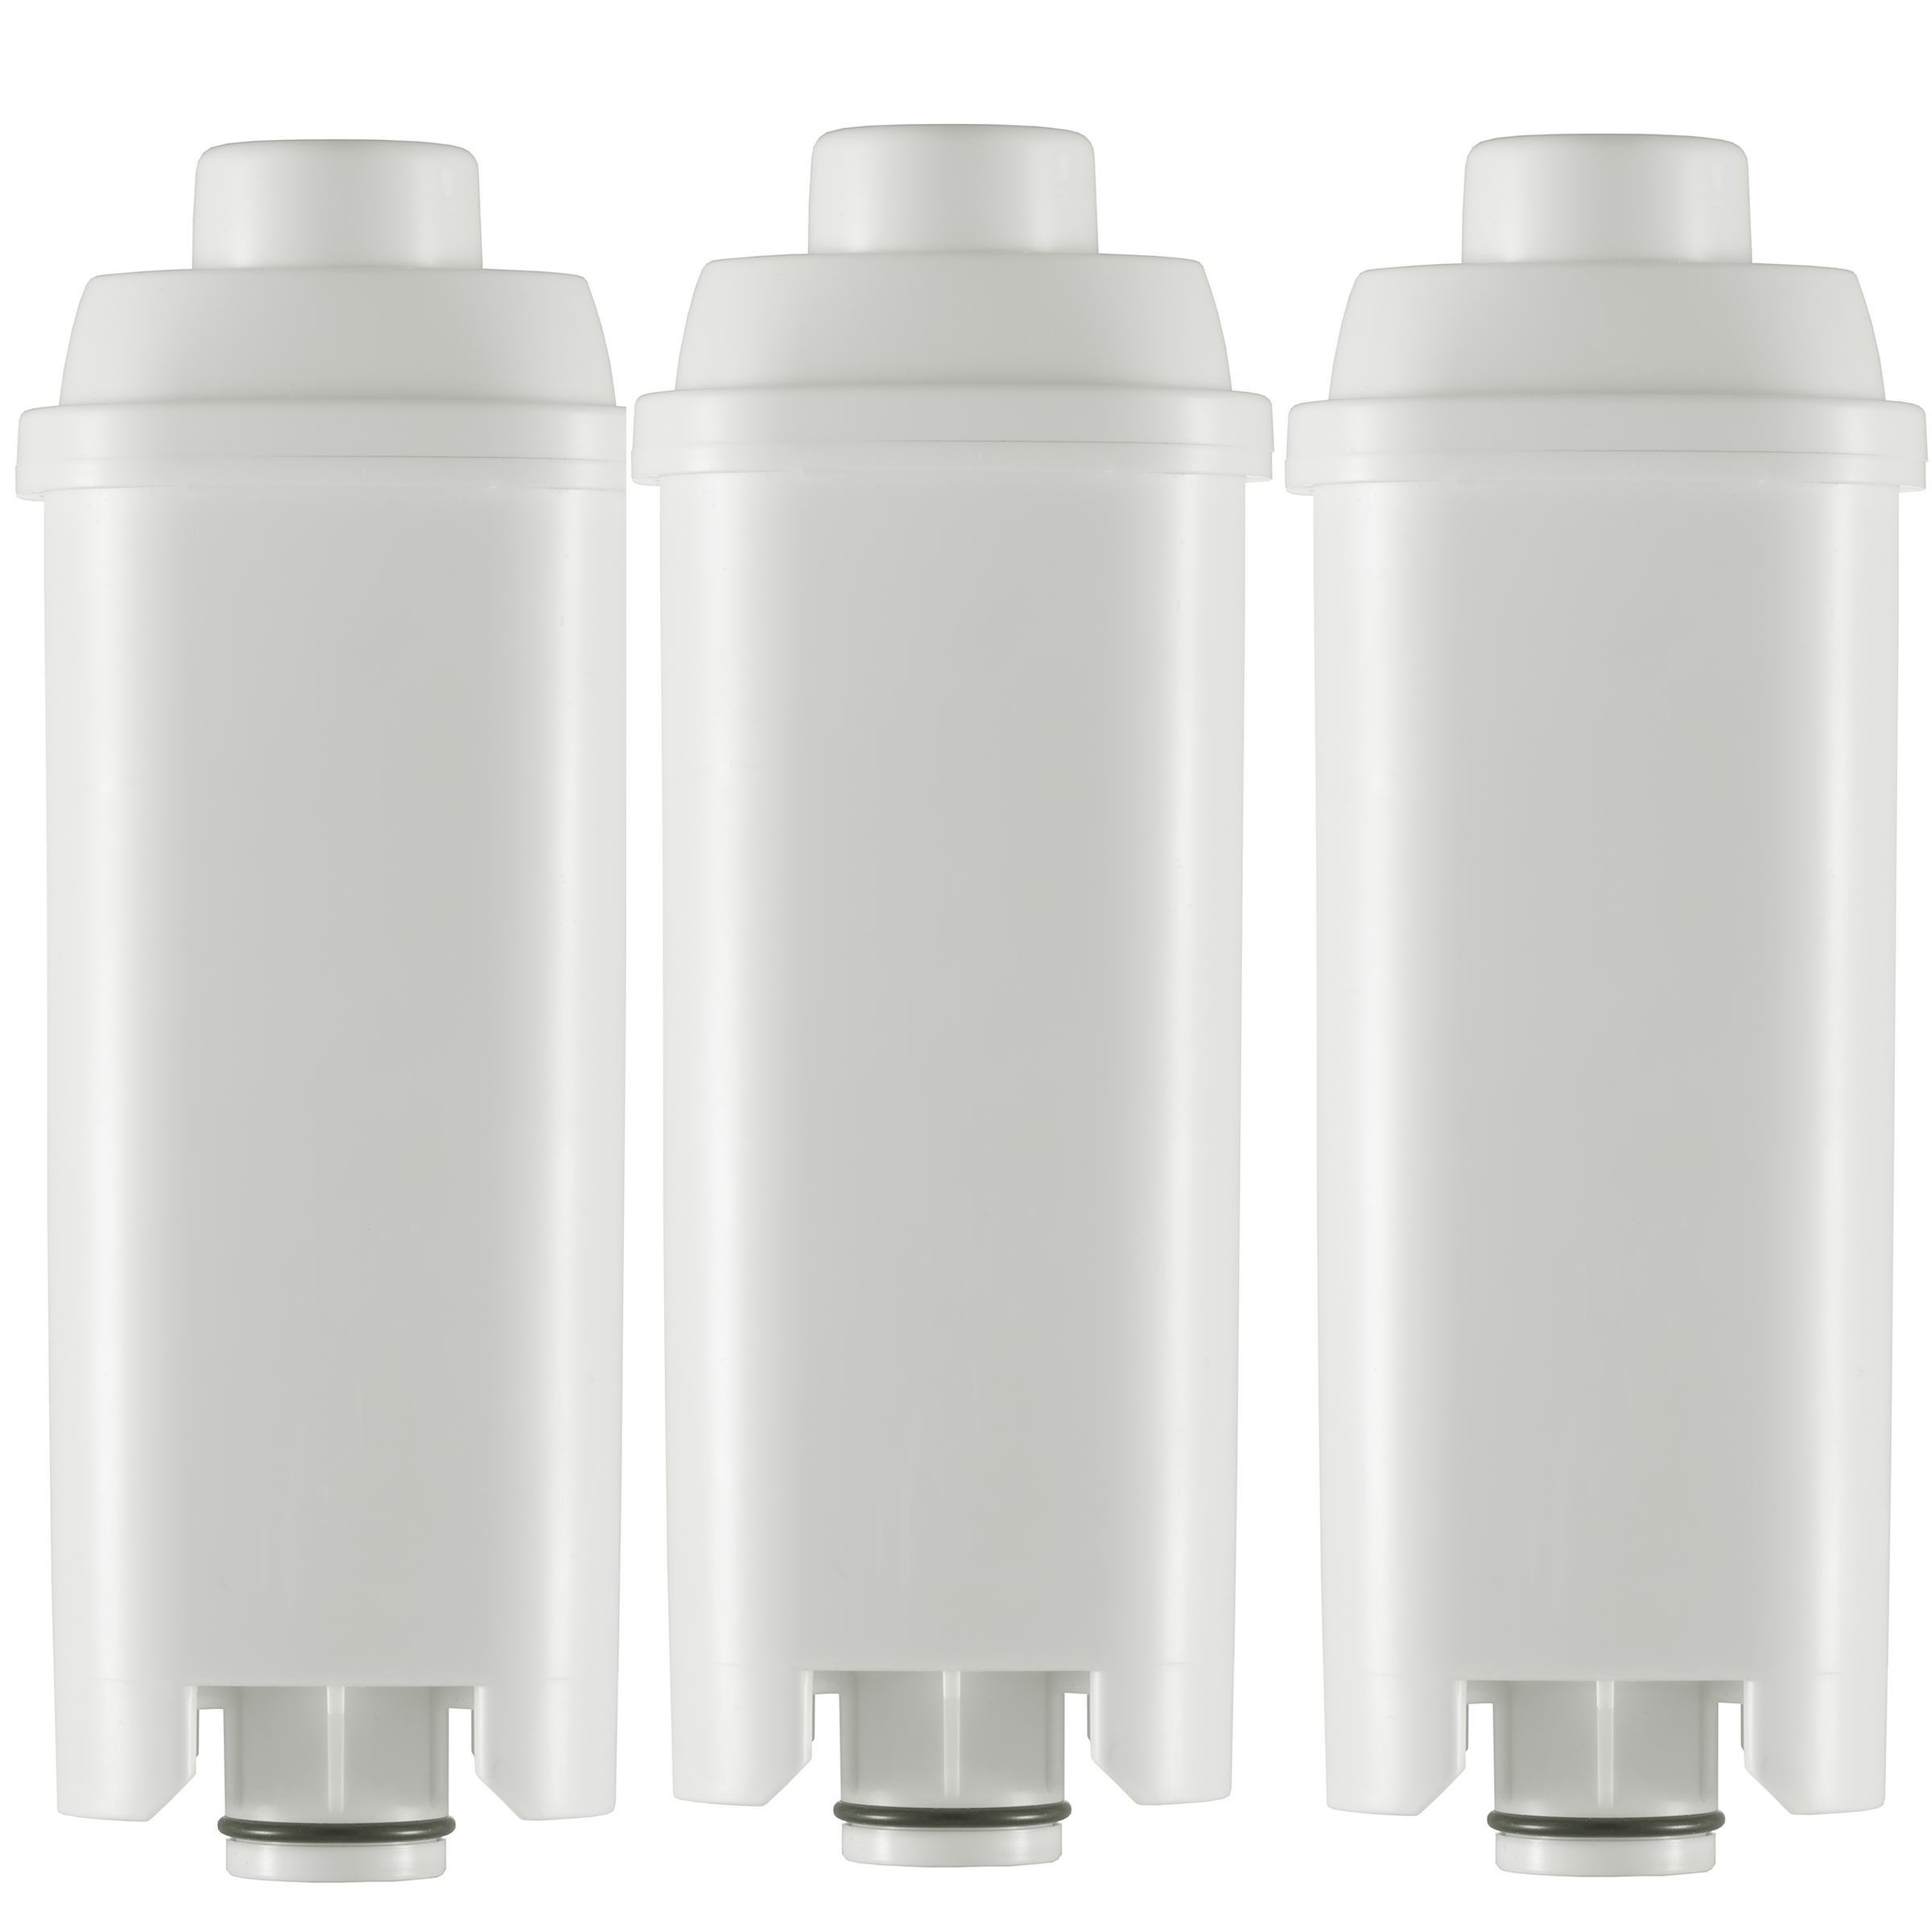 3 Stück Wasserfilterpatronen Kartuschen geeignet für alle DeLonghi Kaffeevollautomaten